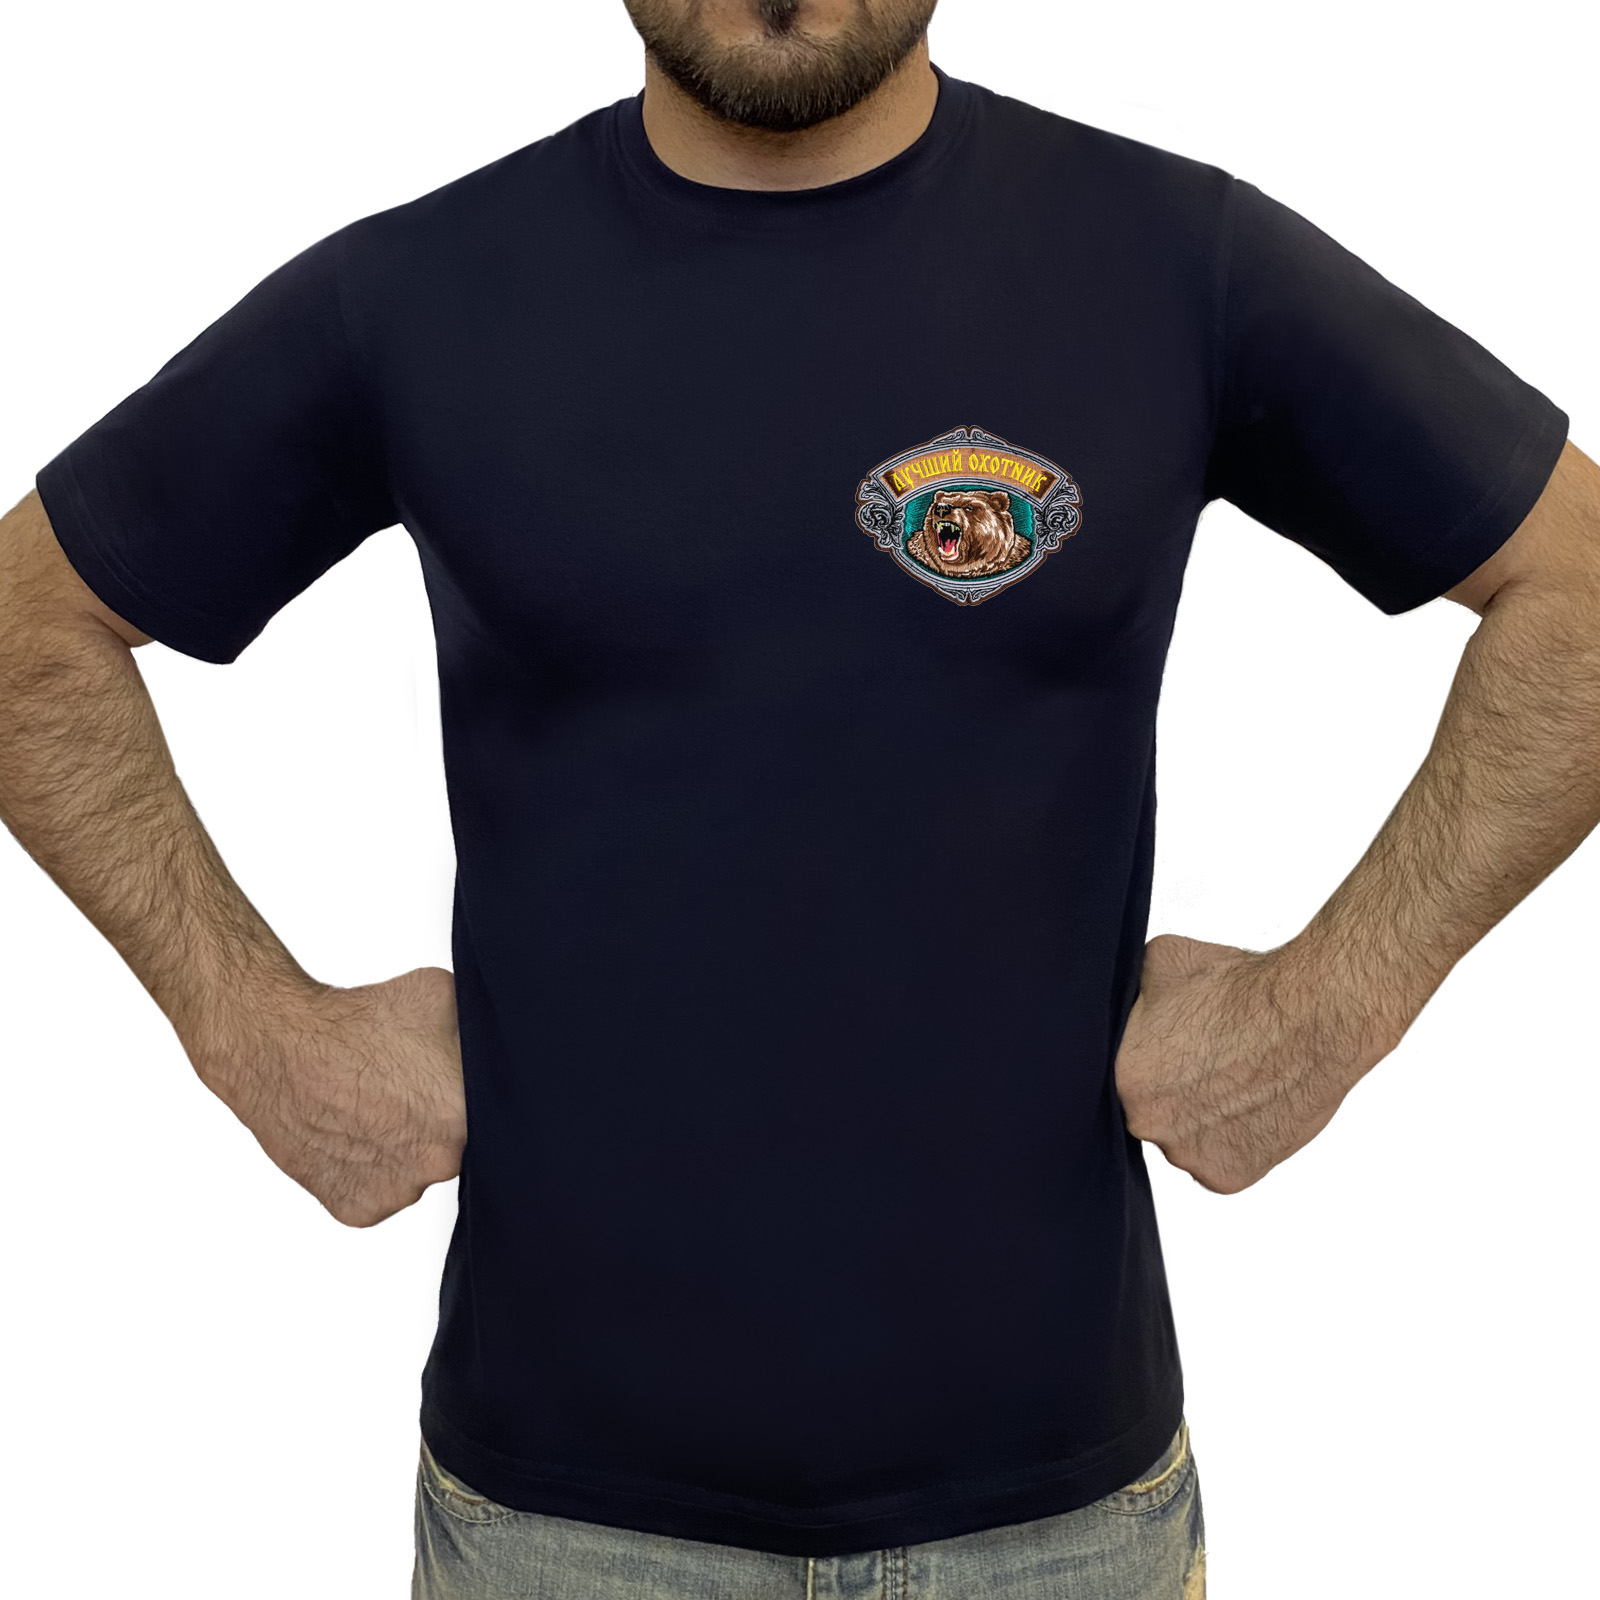 Тёмно-синяя футболка с нашивкой "Лучший охотник"